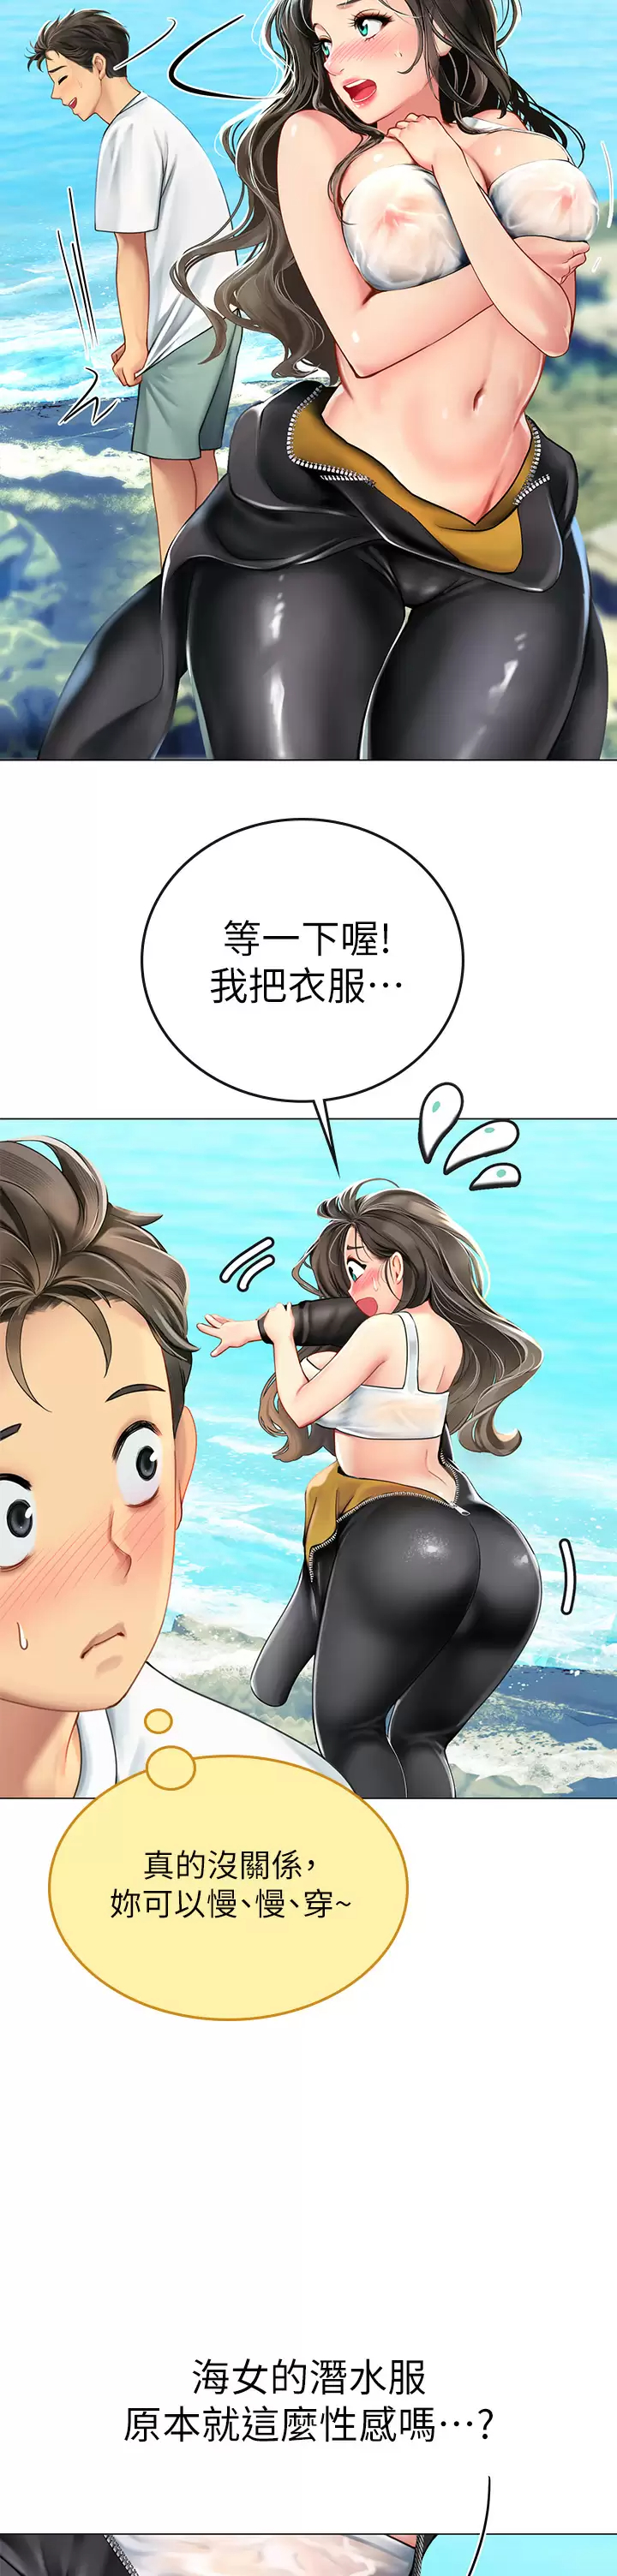 韩国污漫画 海女實習生 第1话 海味满满的热情欢迎礼 68